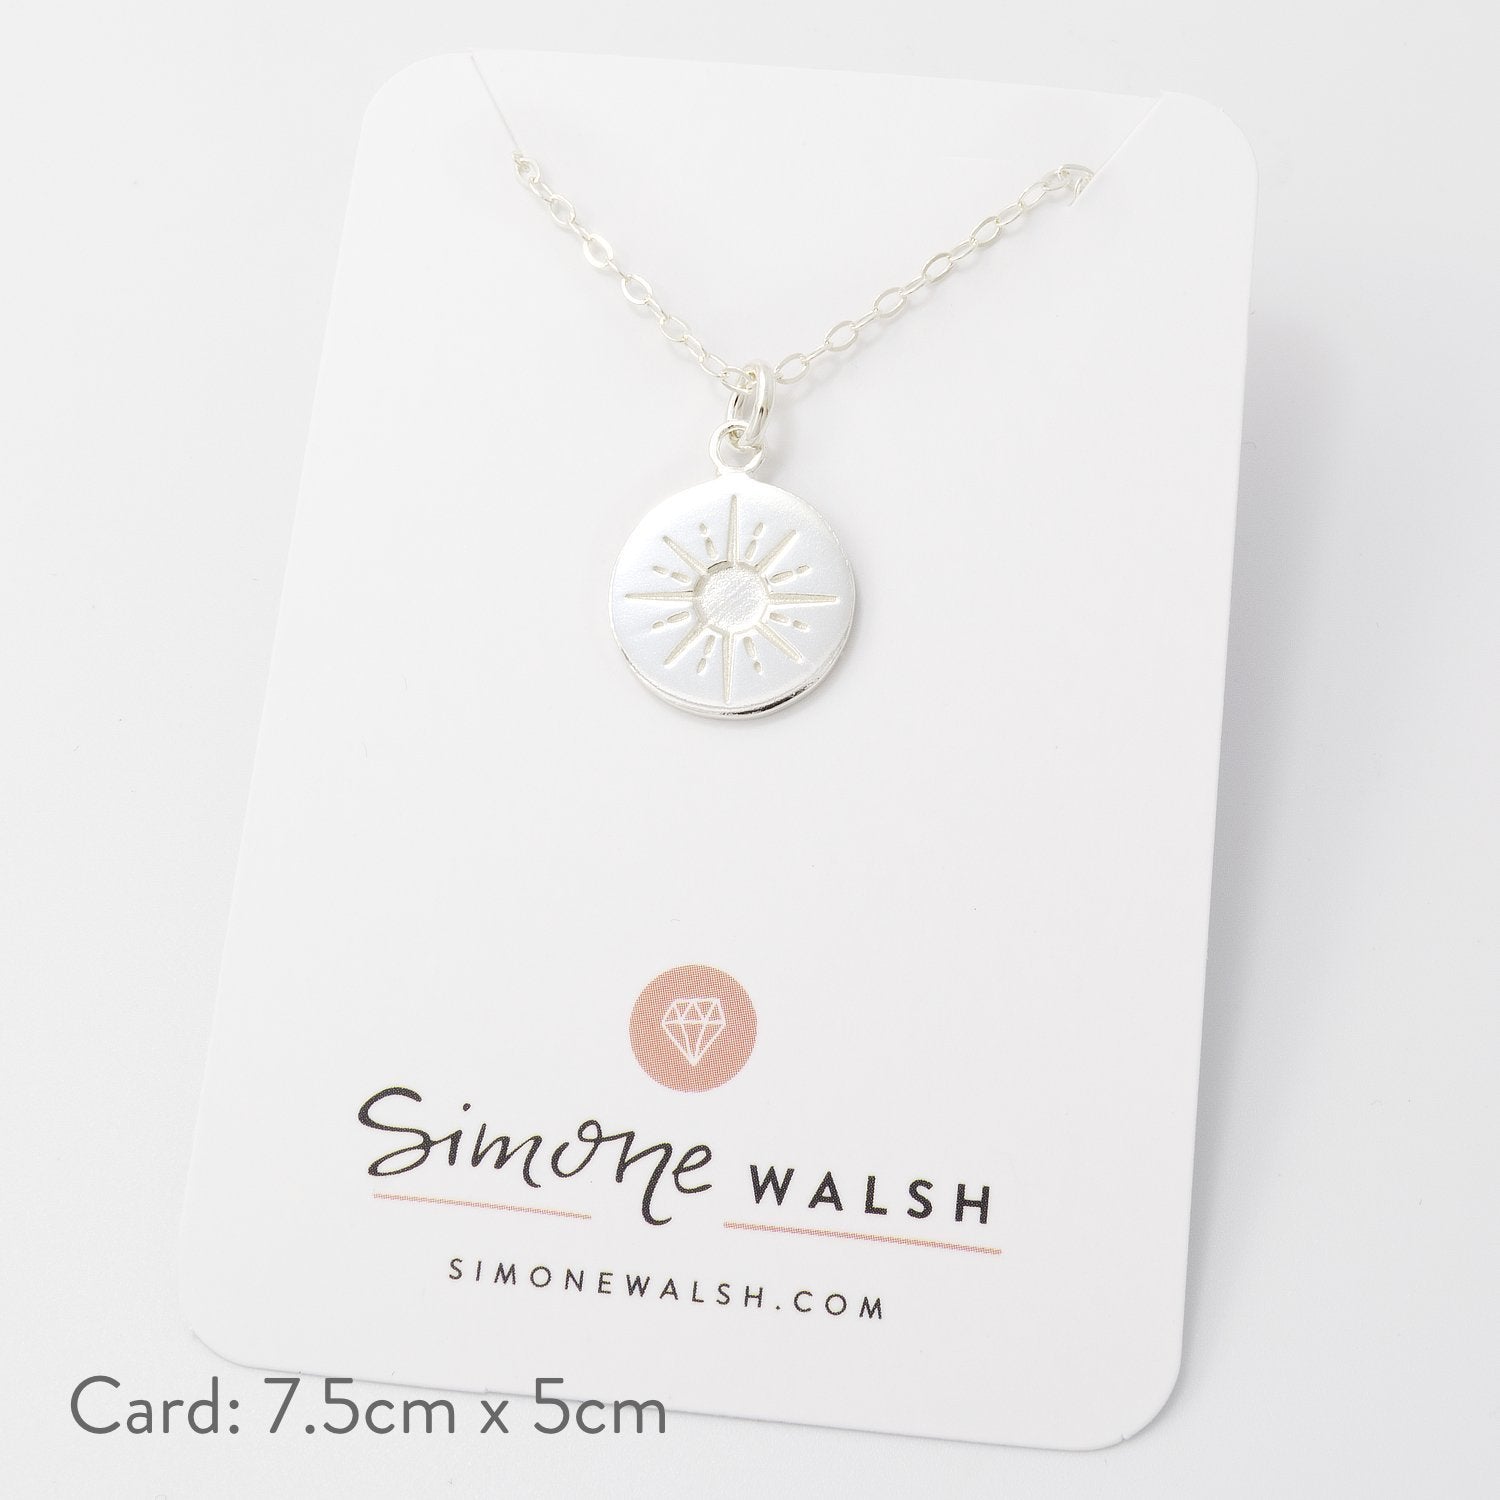 Starburst amulet necklace - Simone Walsh Jewellery Australia